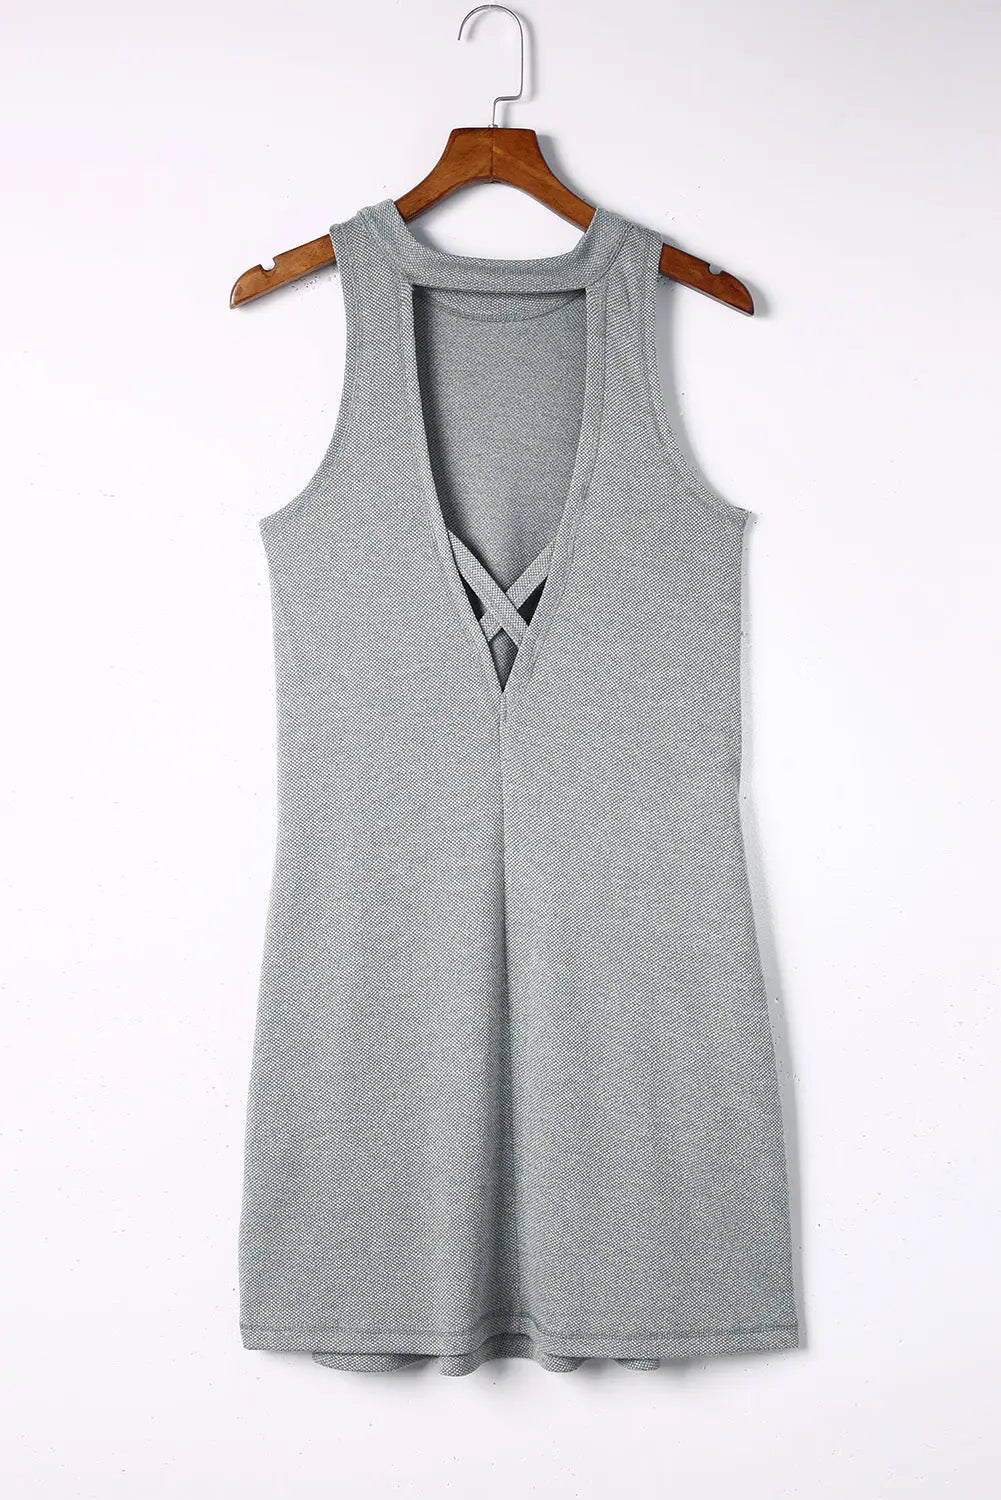 Black crisscross cut-out back knit sleeveless dress - mini dresses